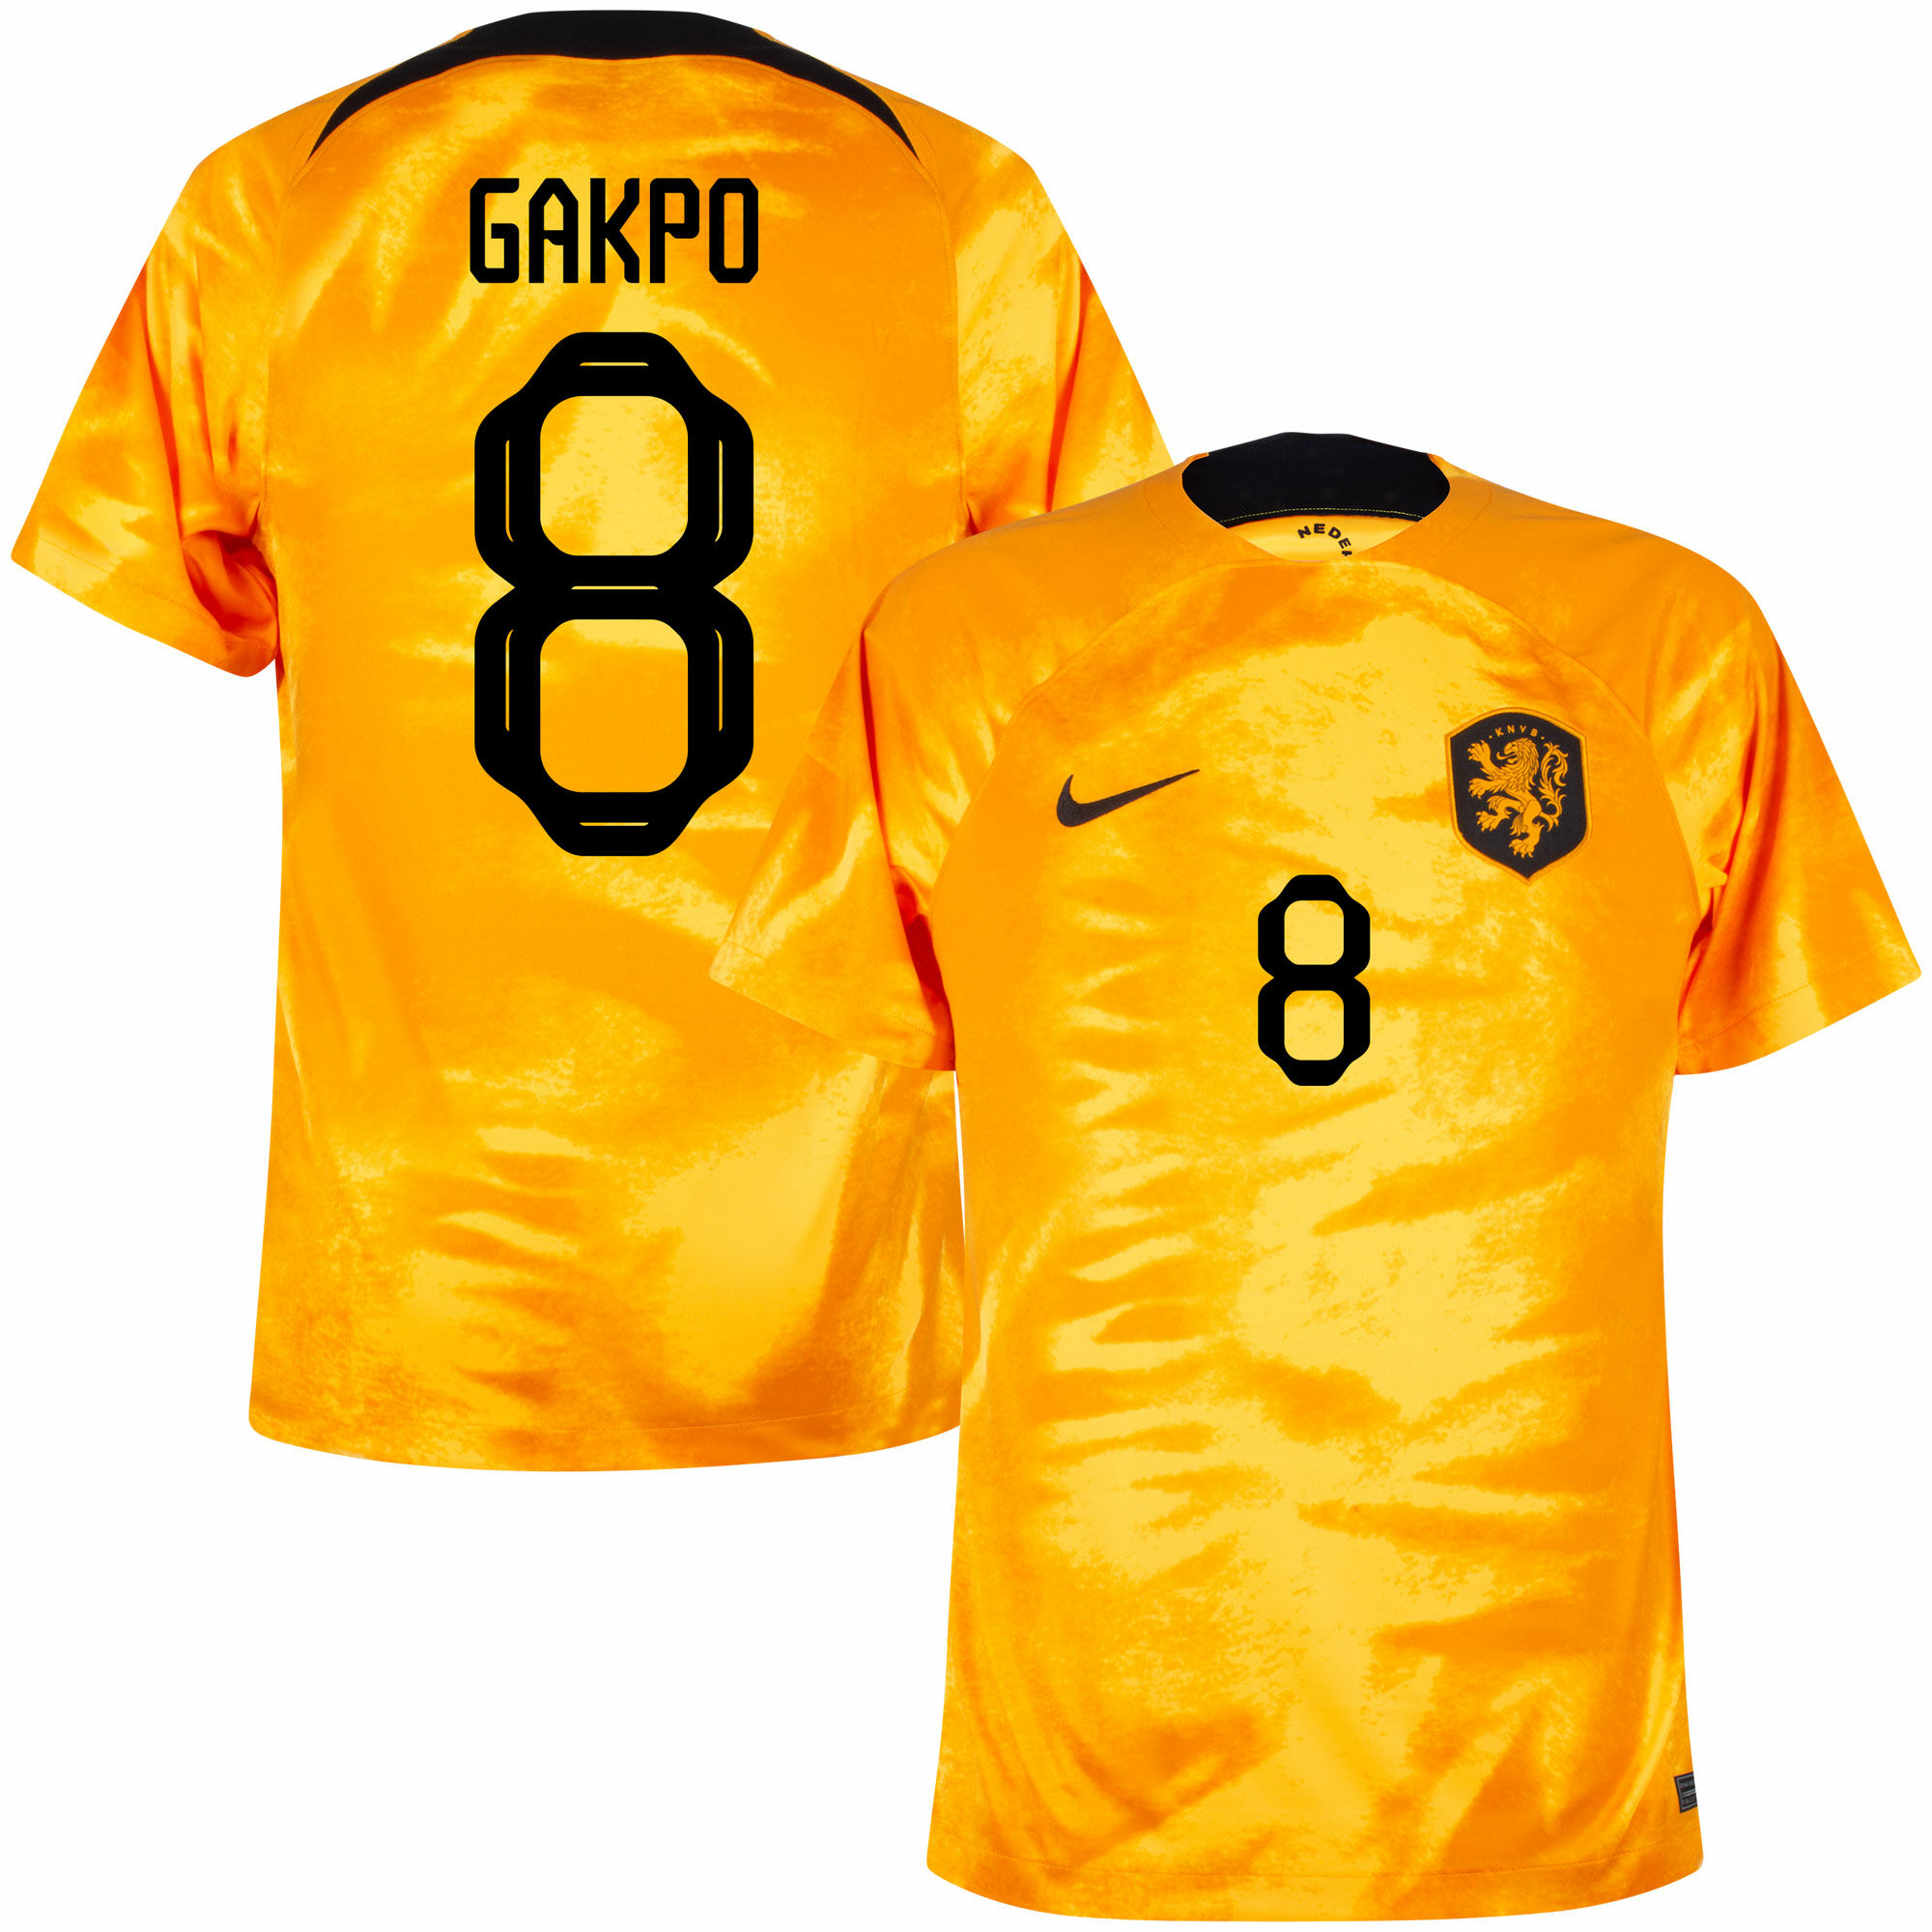 Nizozemí - Dres fotbalový - oranžový, oficiální potisk, Cody Gakpo, domácí, sezóna 2022/23, číslo 8